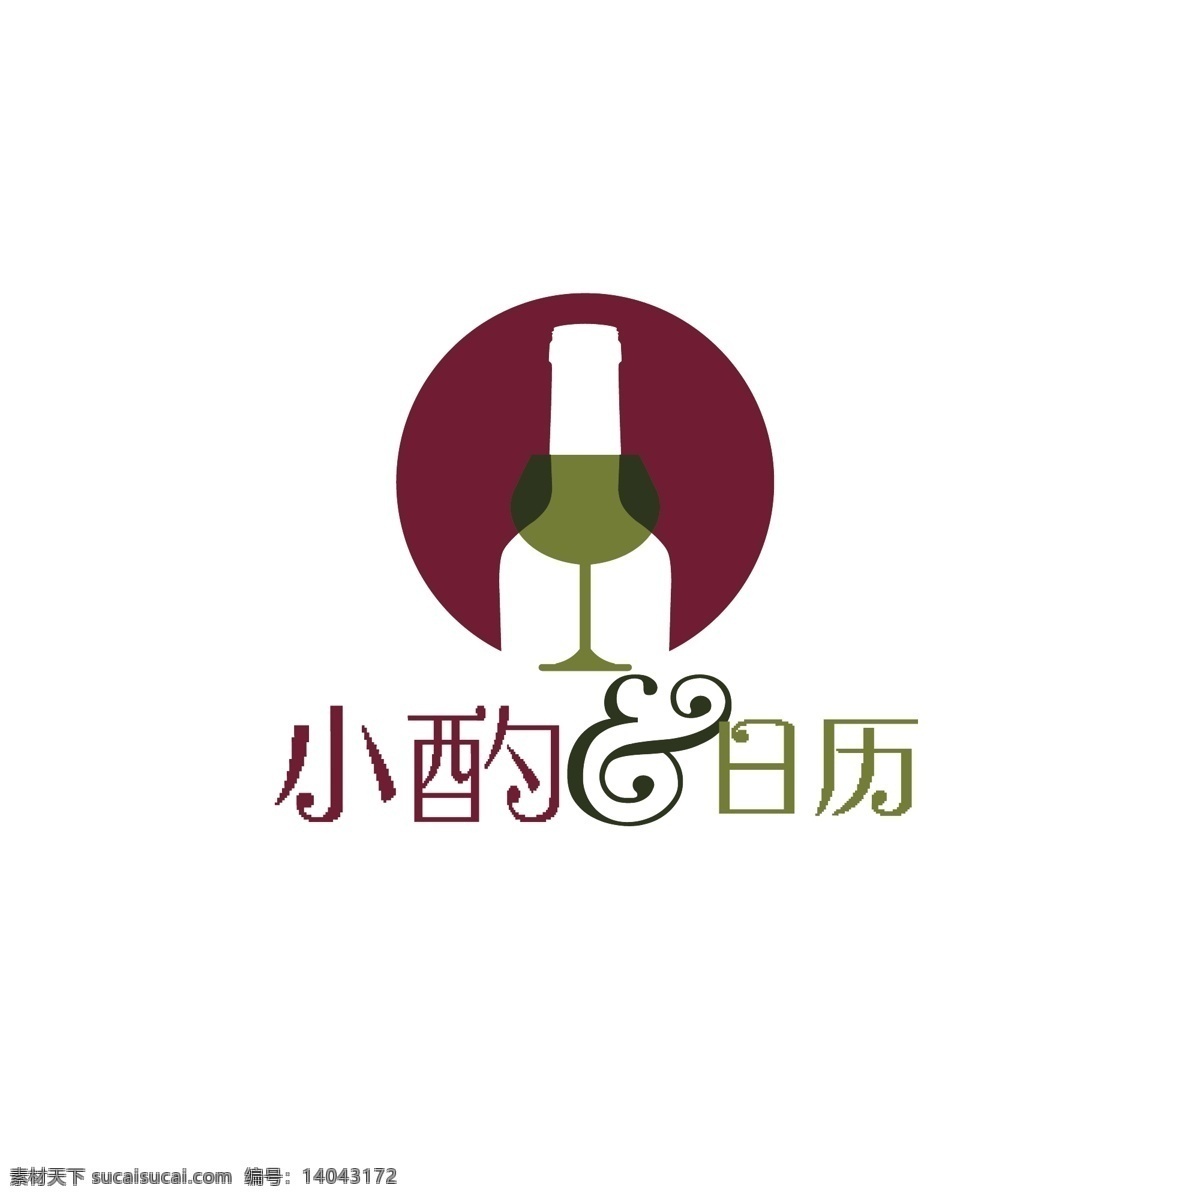 葡萄酒 logo 日历 标志设计 小酌日历 logo设计